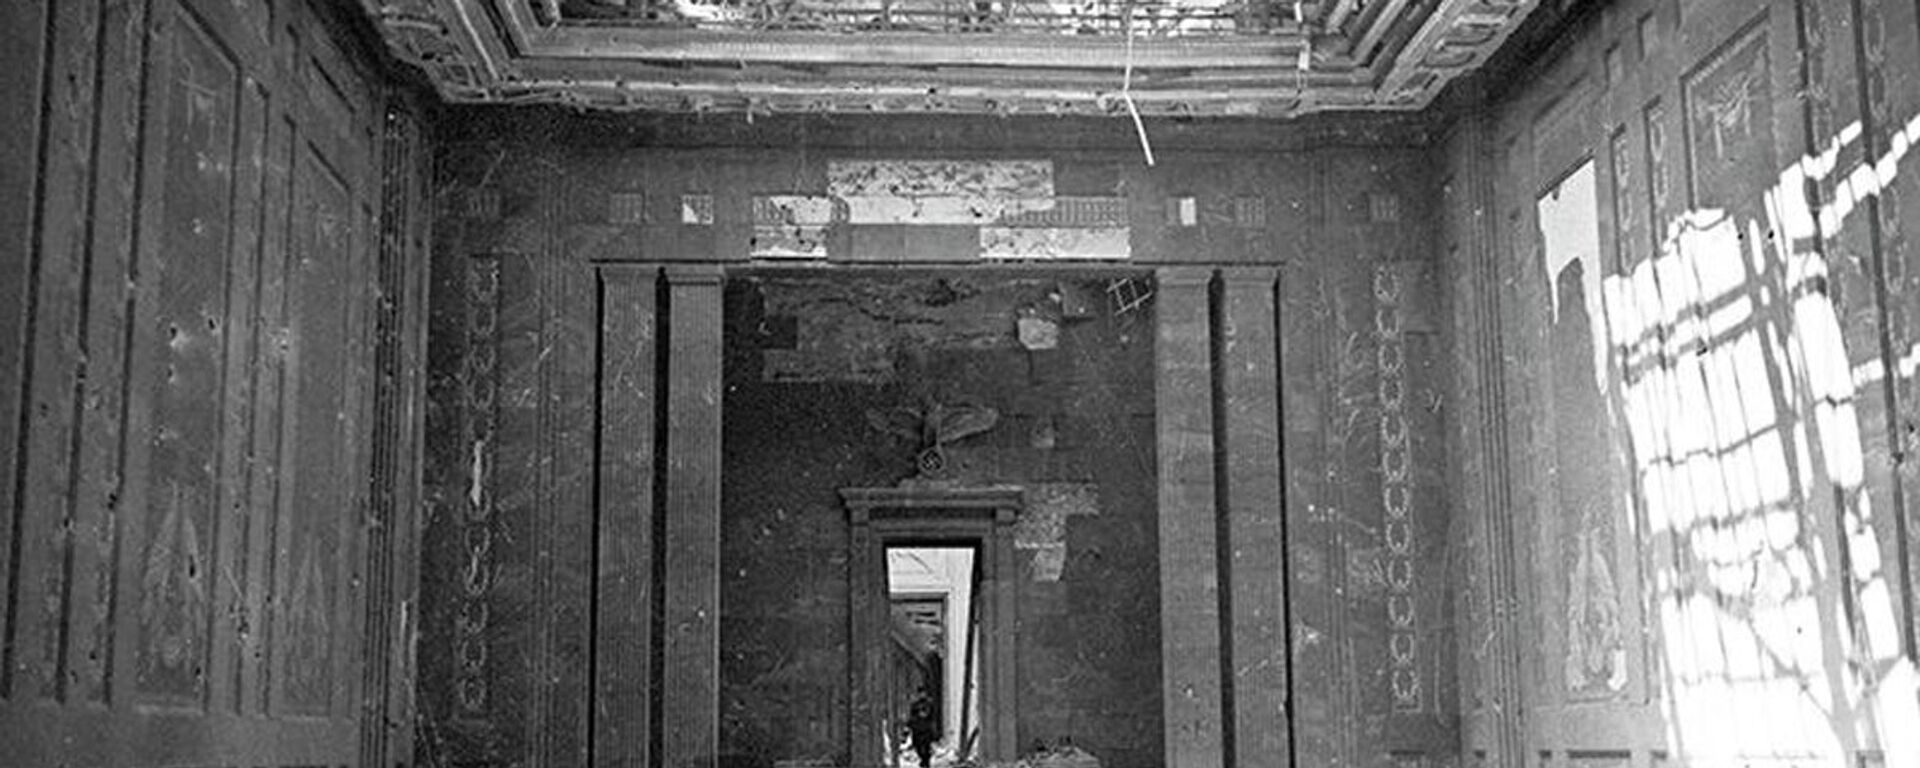 Ulaz u nadzemni deo Firerovog bunkera iz pravca dvorišta Carske kancelarije - Sputnik Srbija, 1920, 06.11.2020